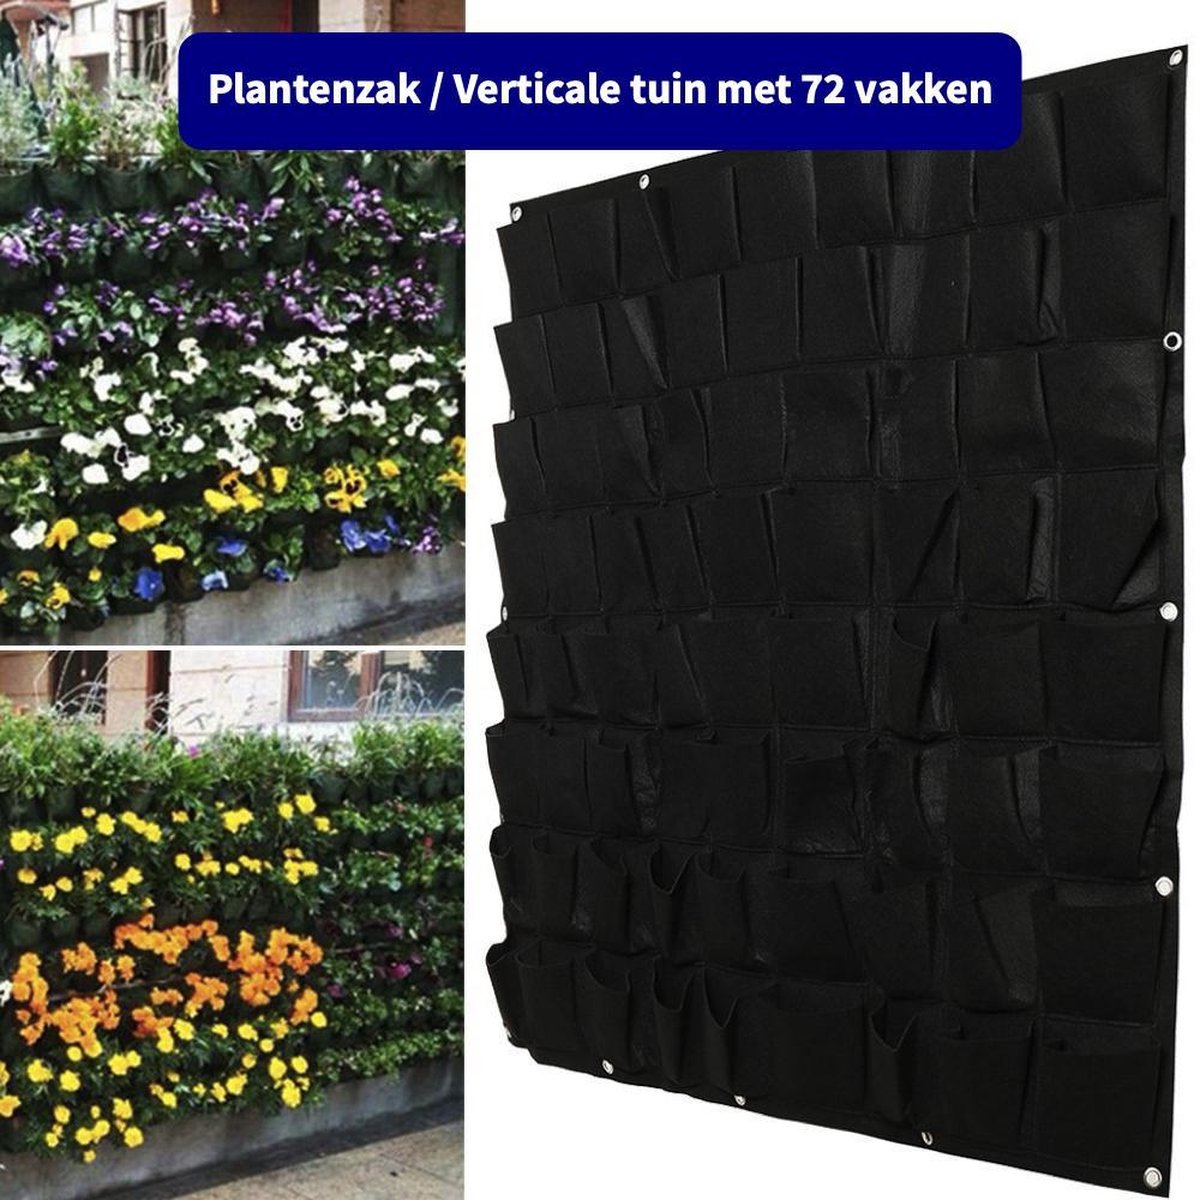 Plantenzak met 72 vakken - Verticale tuin - Plantentas - Plantenhanger geschikt voor kruiden, bloemen en planten - Hangende plantenbak - Anno 1588 - Dik vilt - 100x100 cm - Zwart